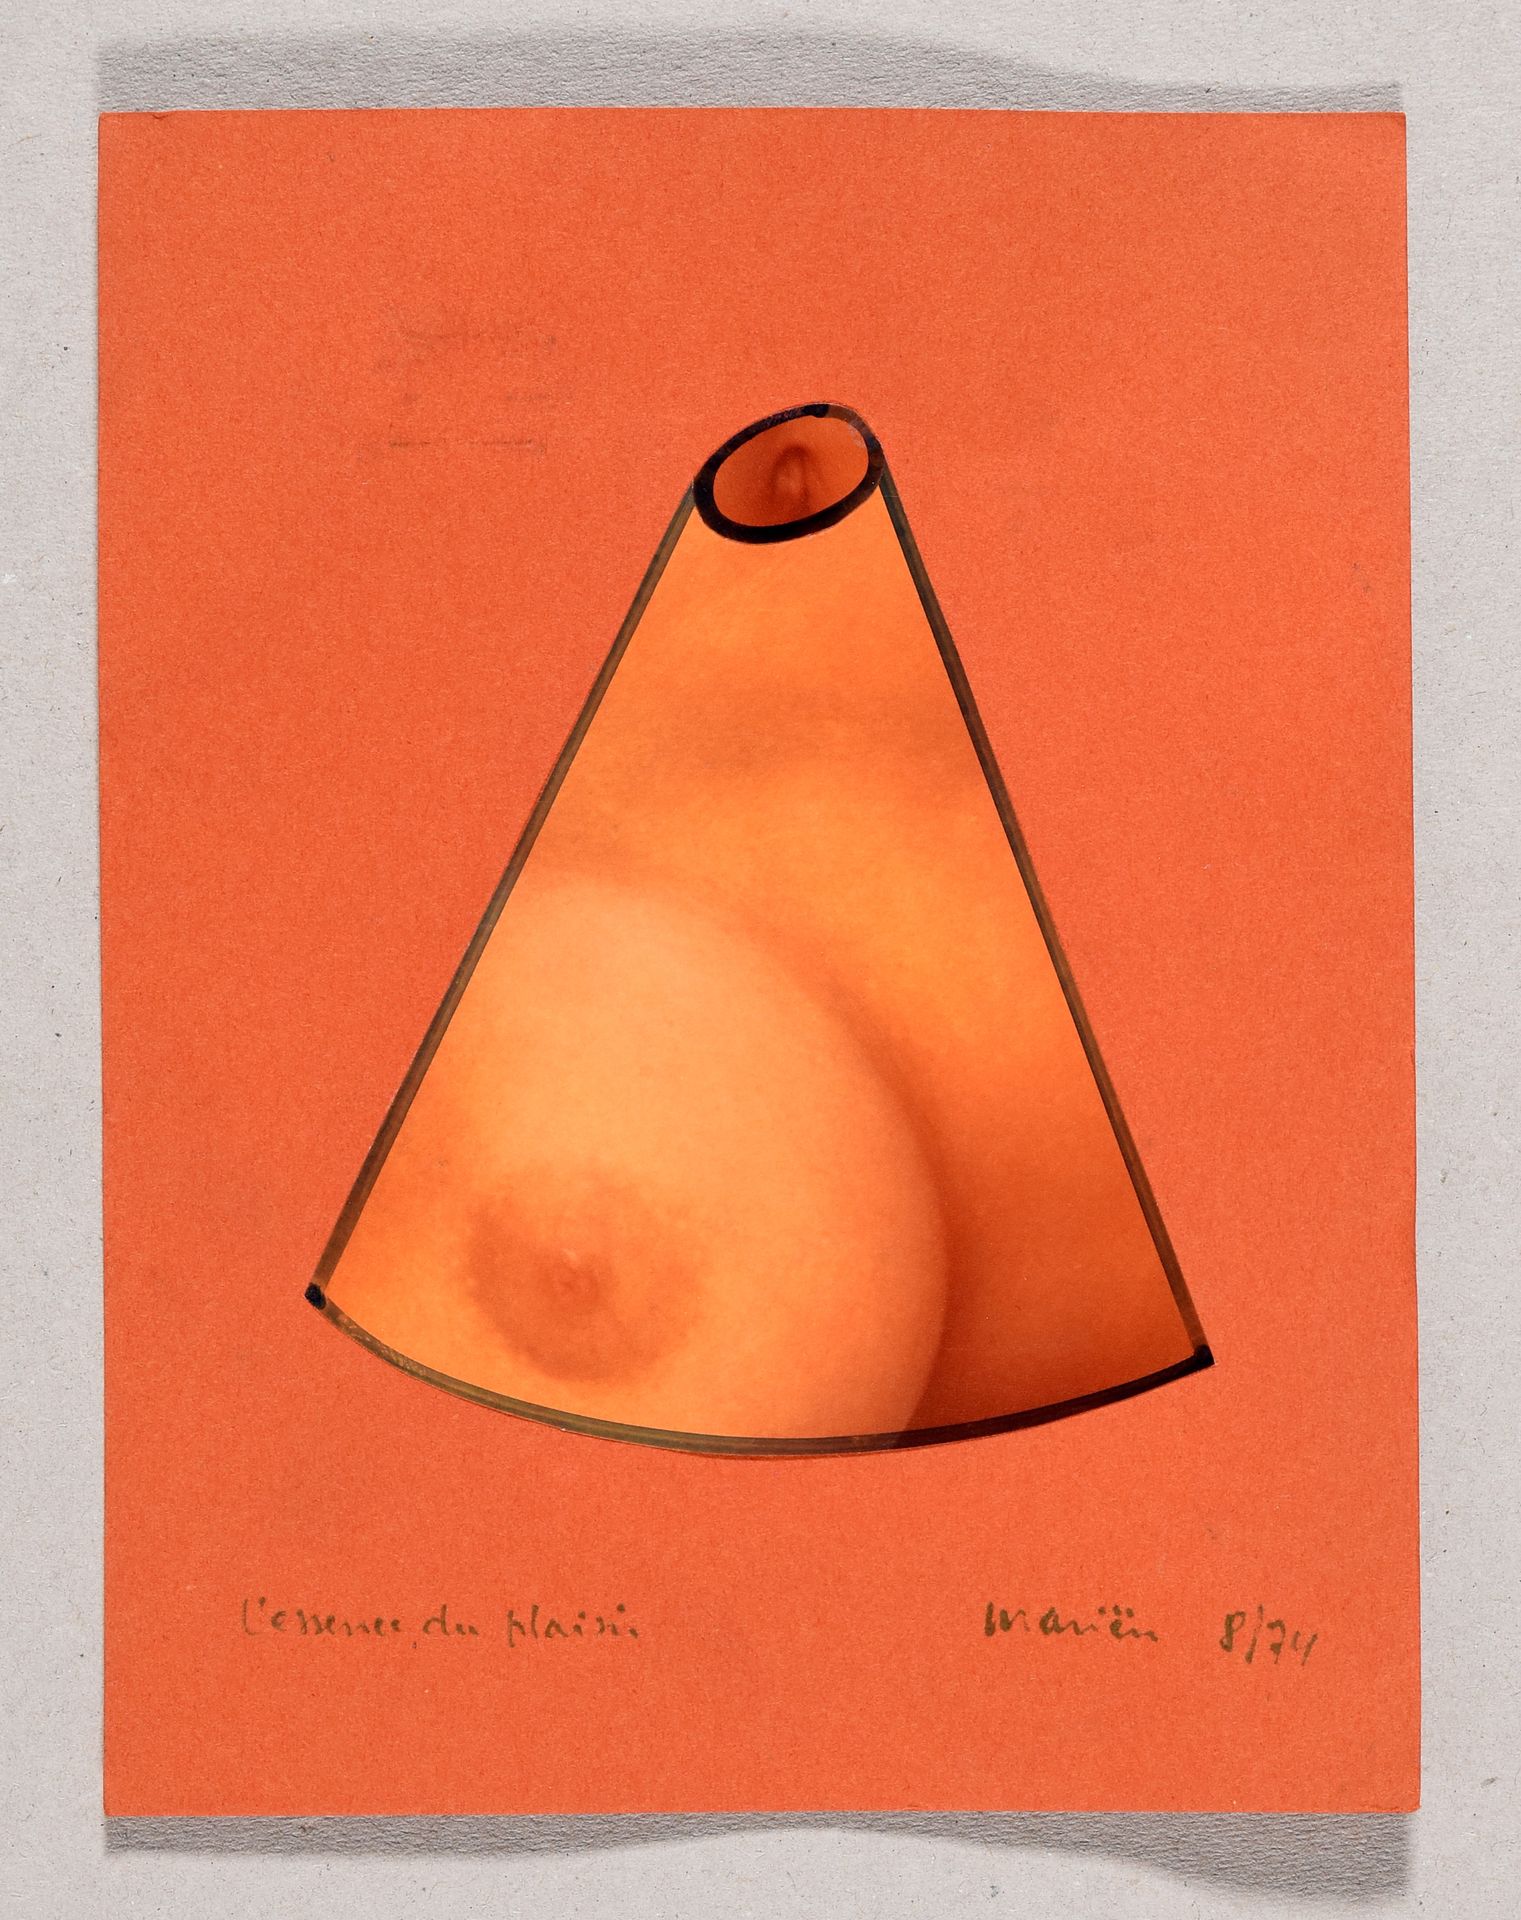 Mariën, Marcel MARIËN, Marcel L'essence du plaisir. 1974 Collage photographique &hellip;